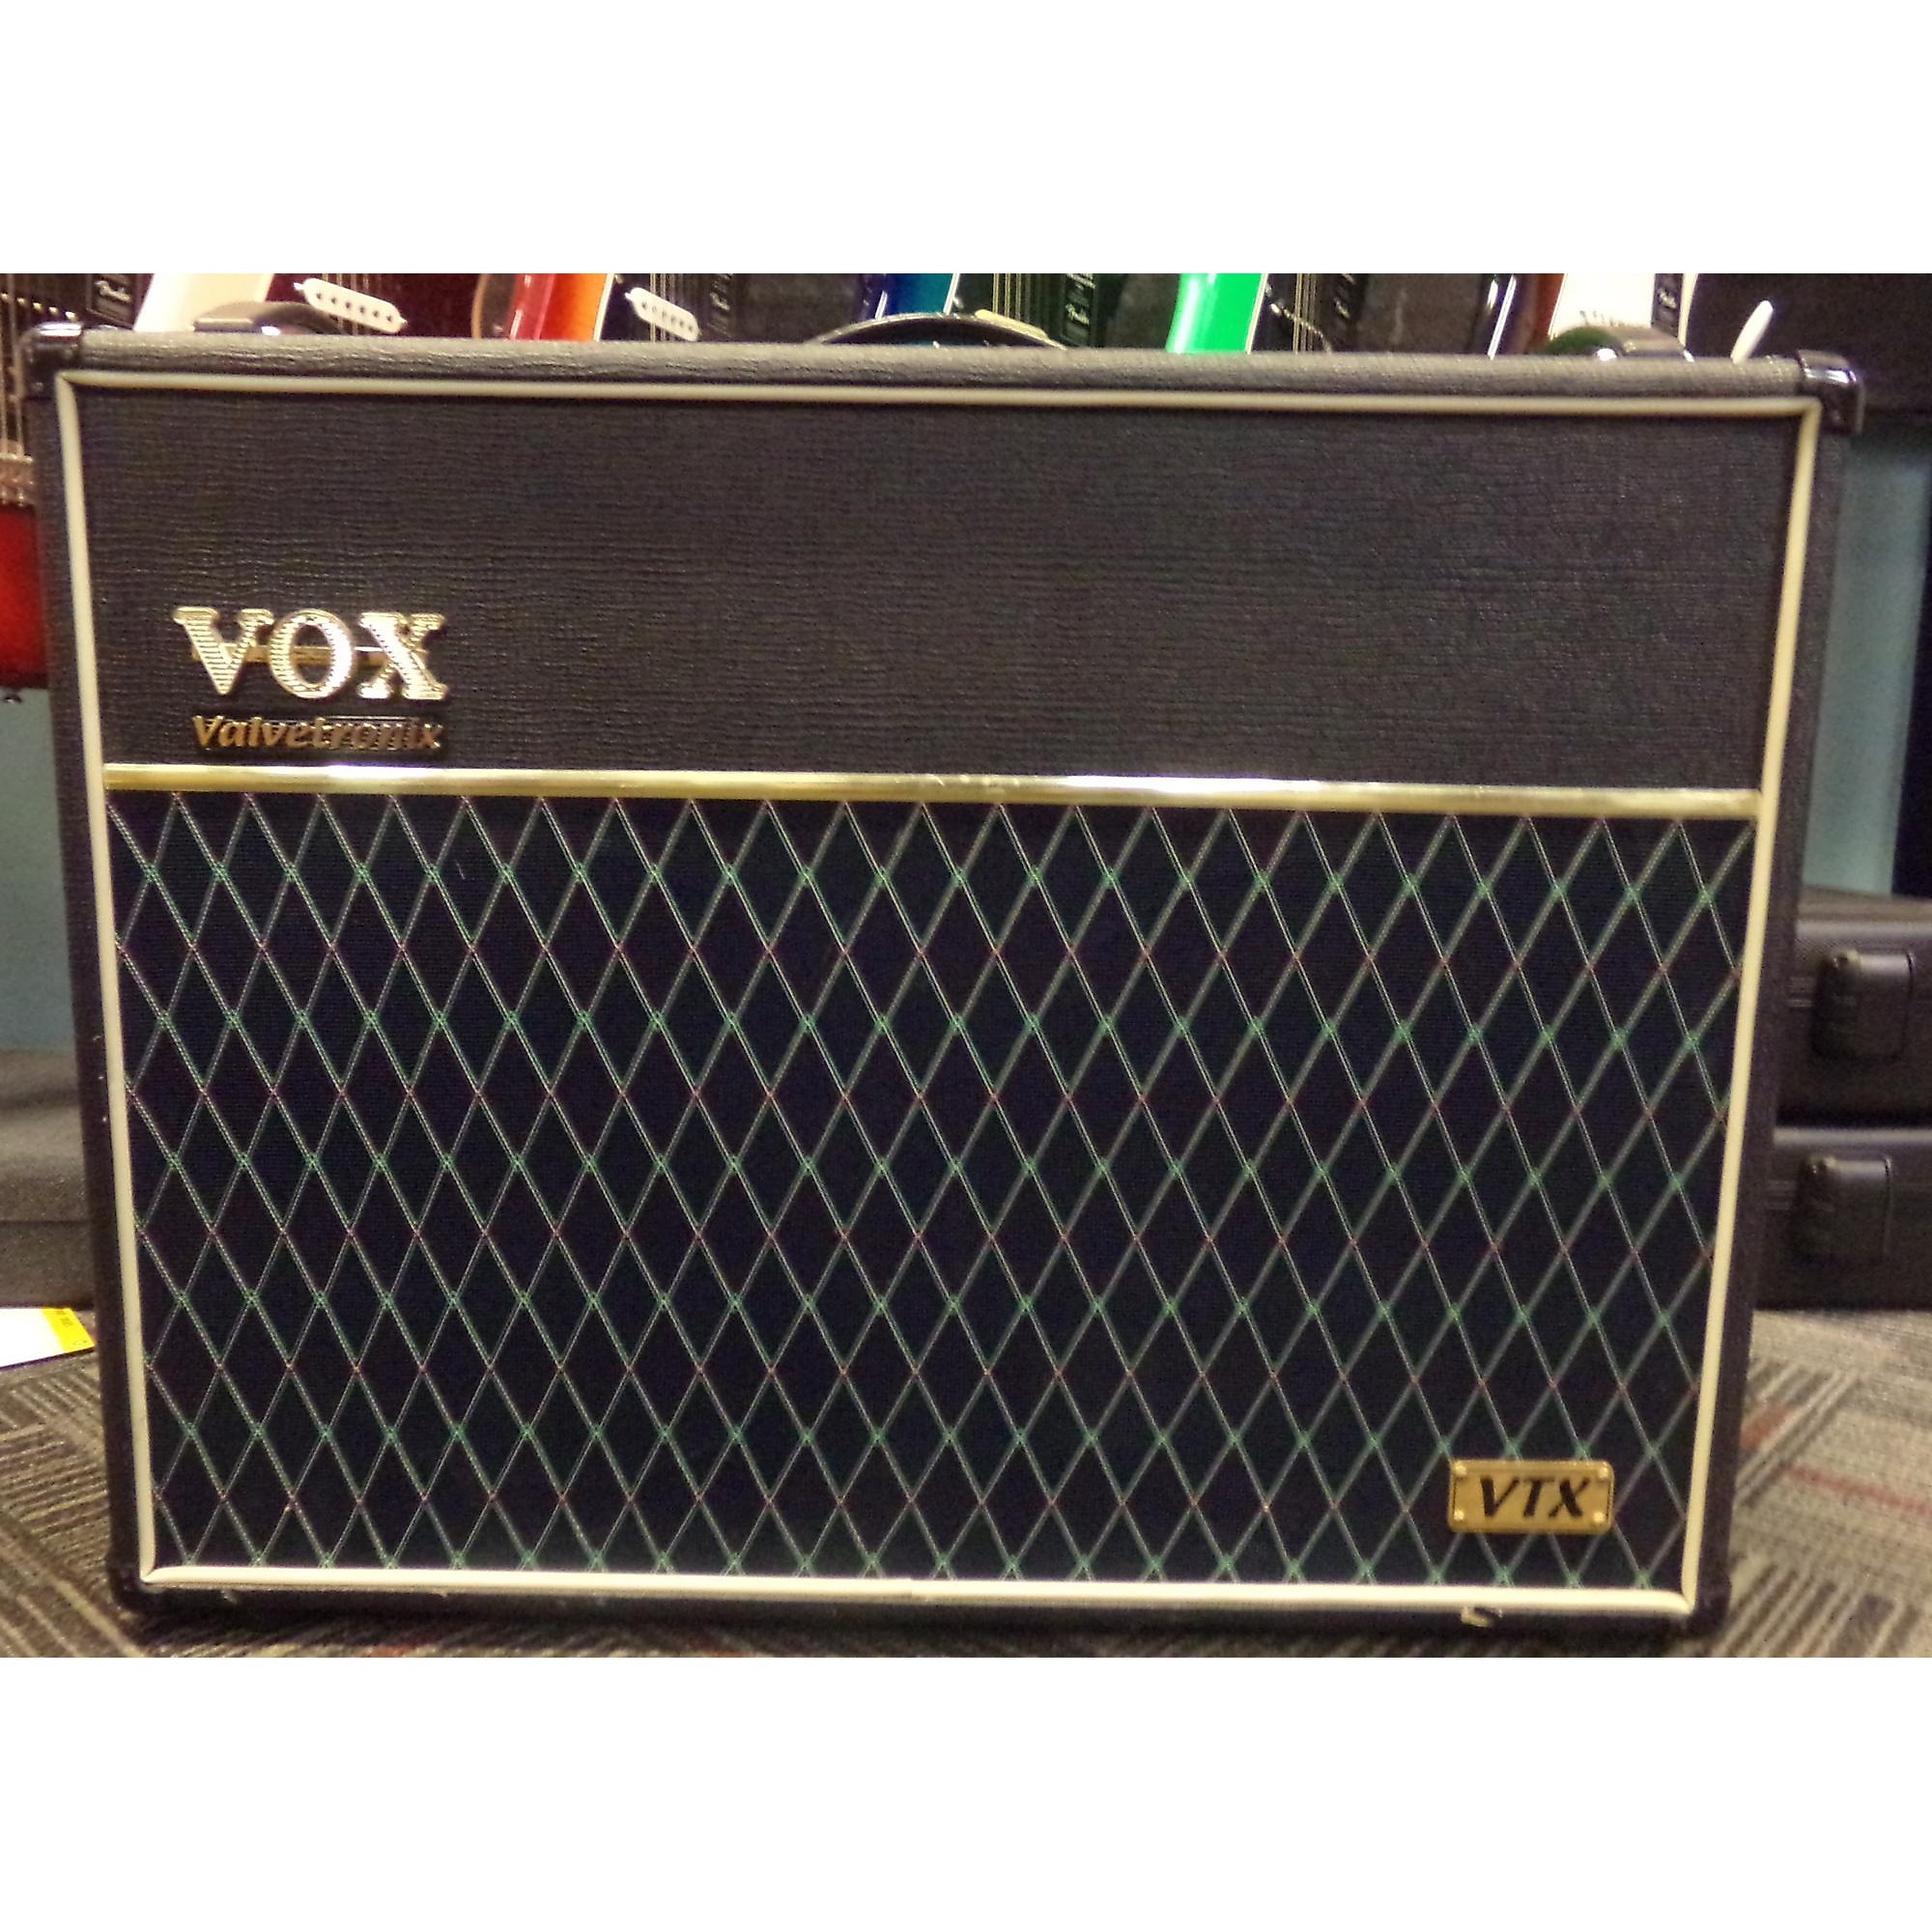 Used VOX ADVT W Valvetronix Guitar Combo Amp   Guitar Center